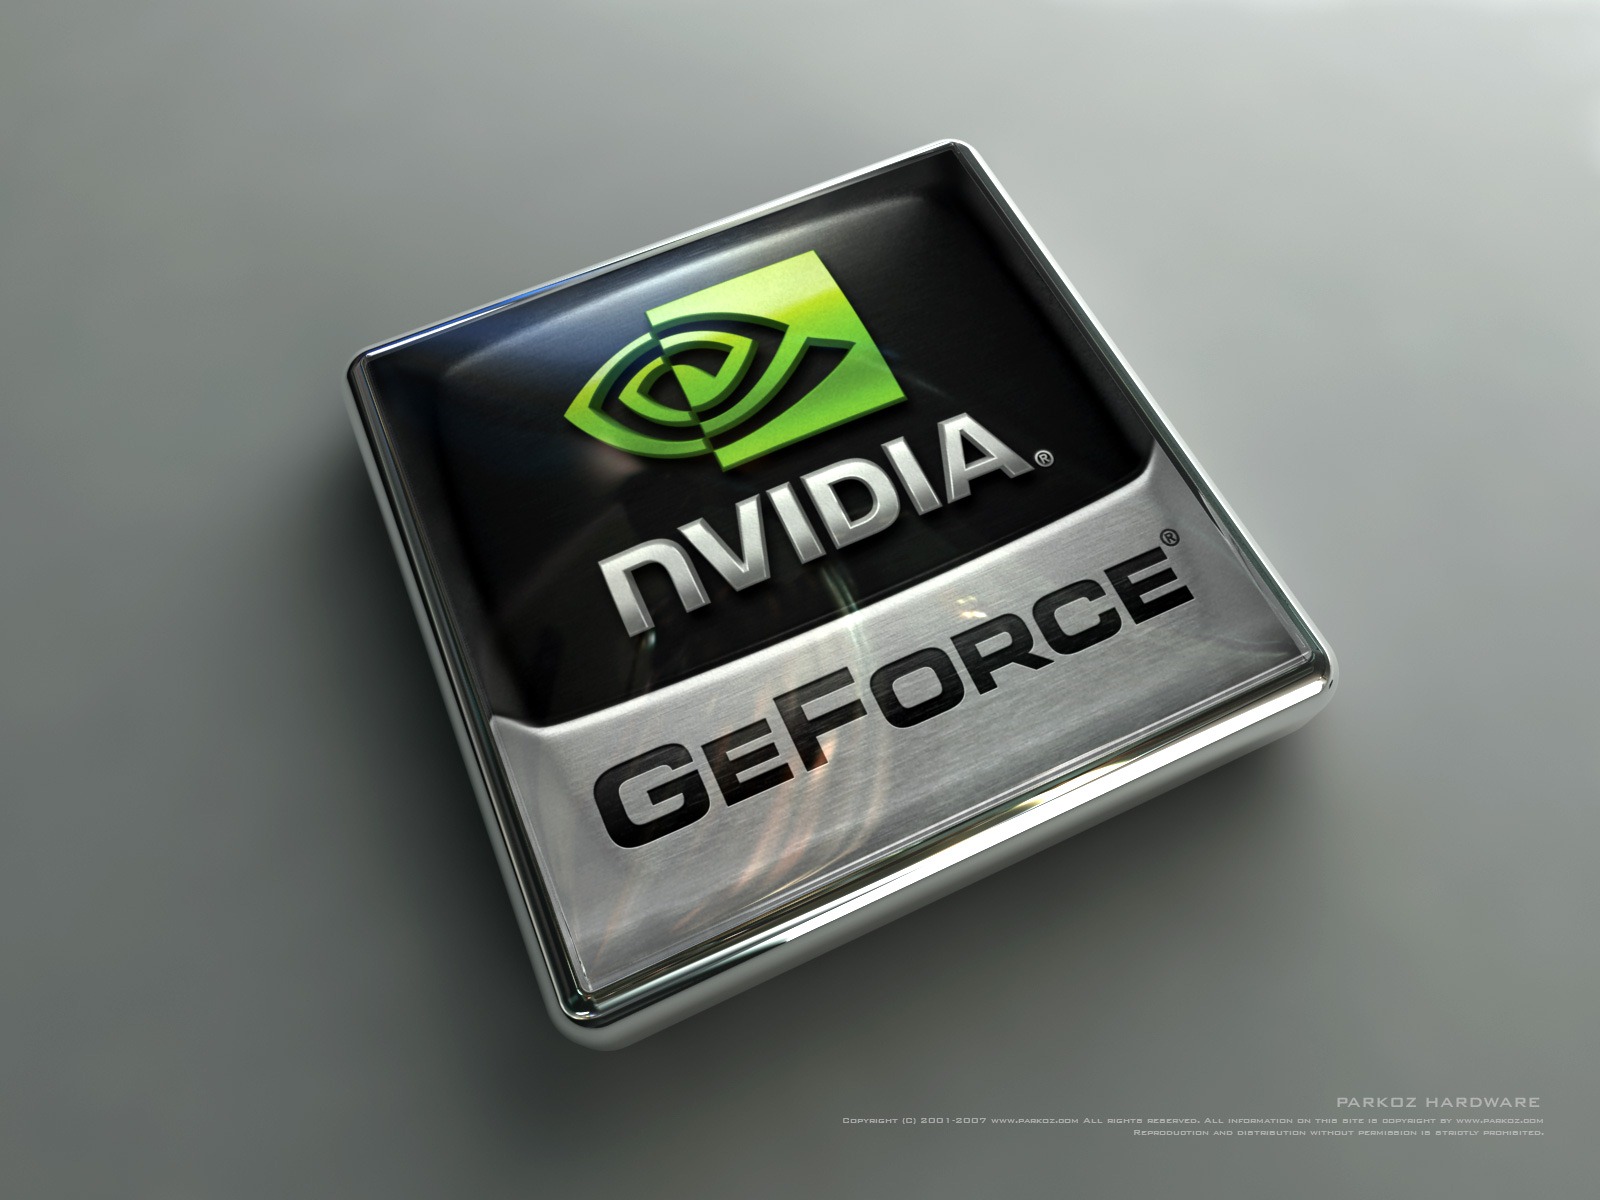 nvidia geforce gt 520m driver windows 7 64 bit update